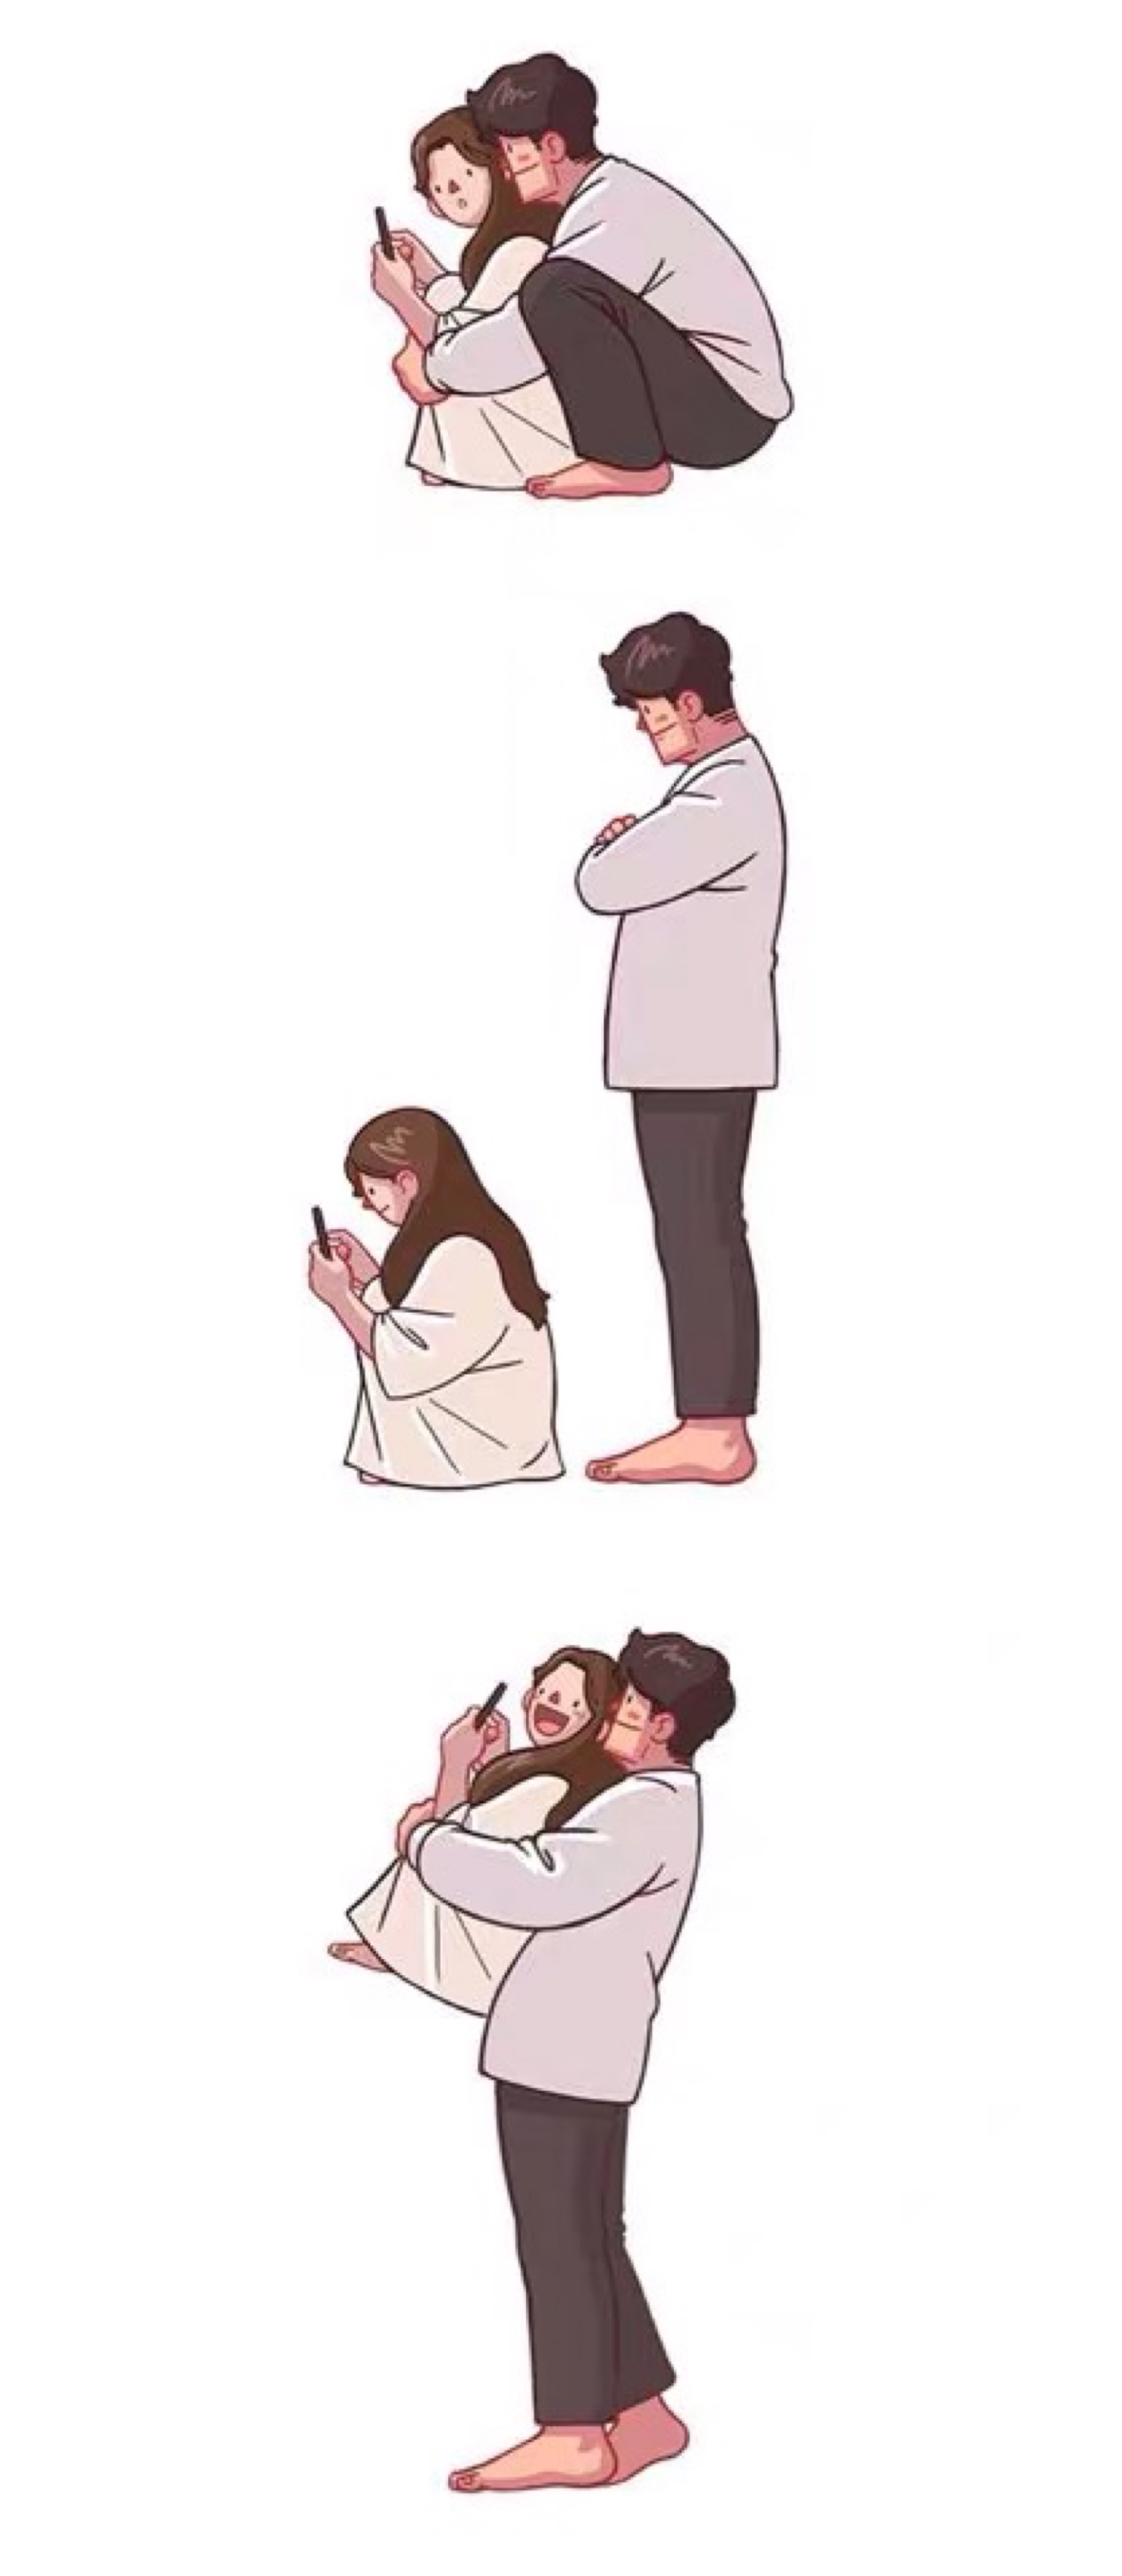 韩国手绘情侣日常插画图片